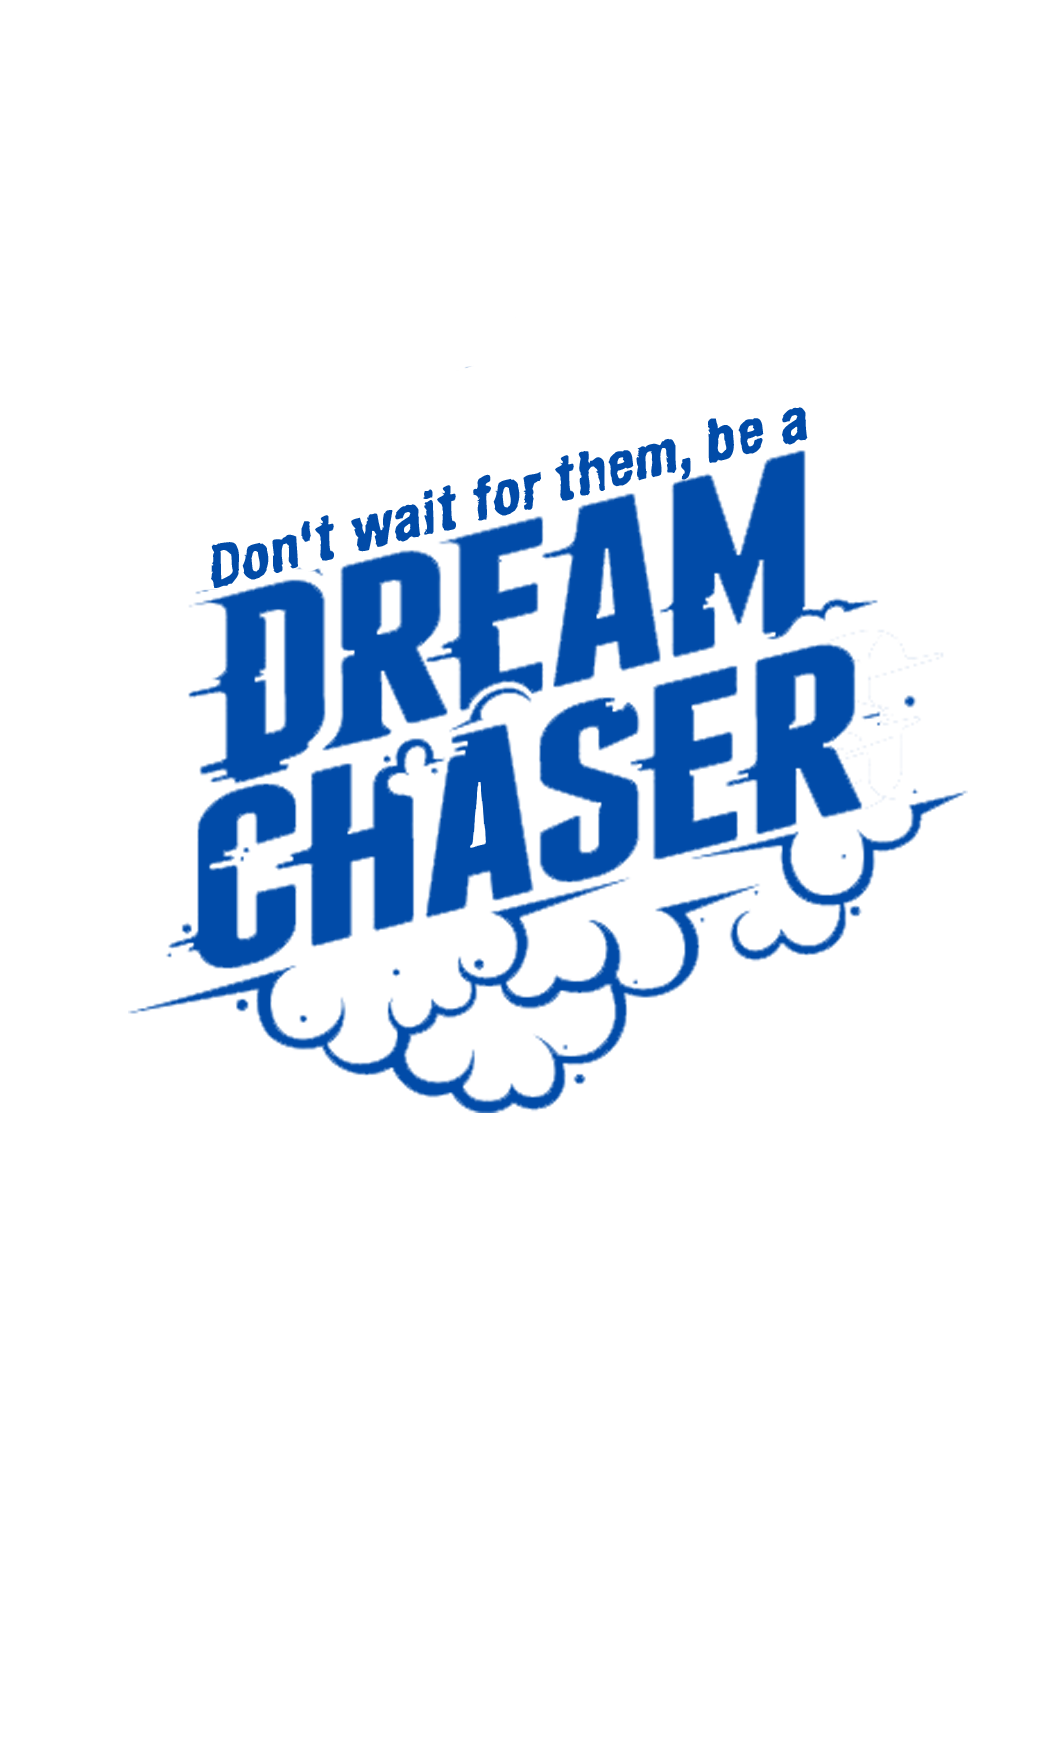 Dream Chasers logo PNG imagen fondo Transparente